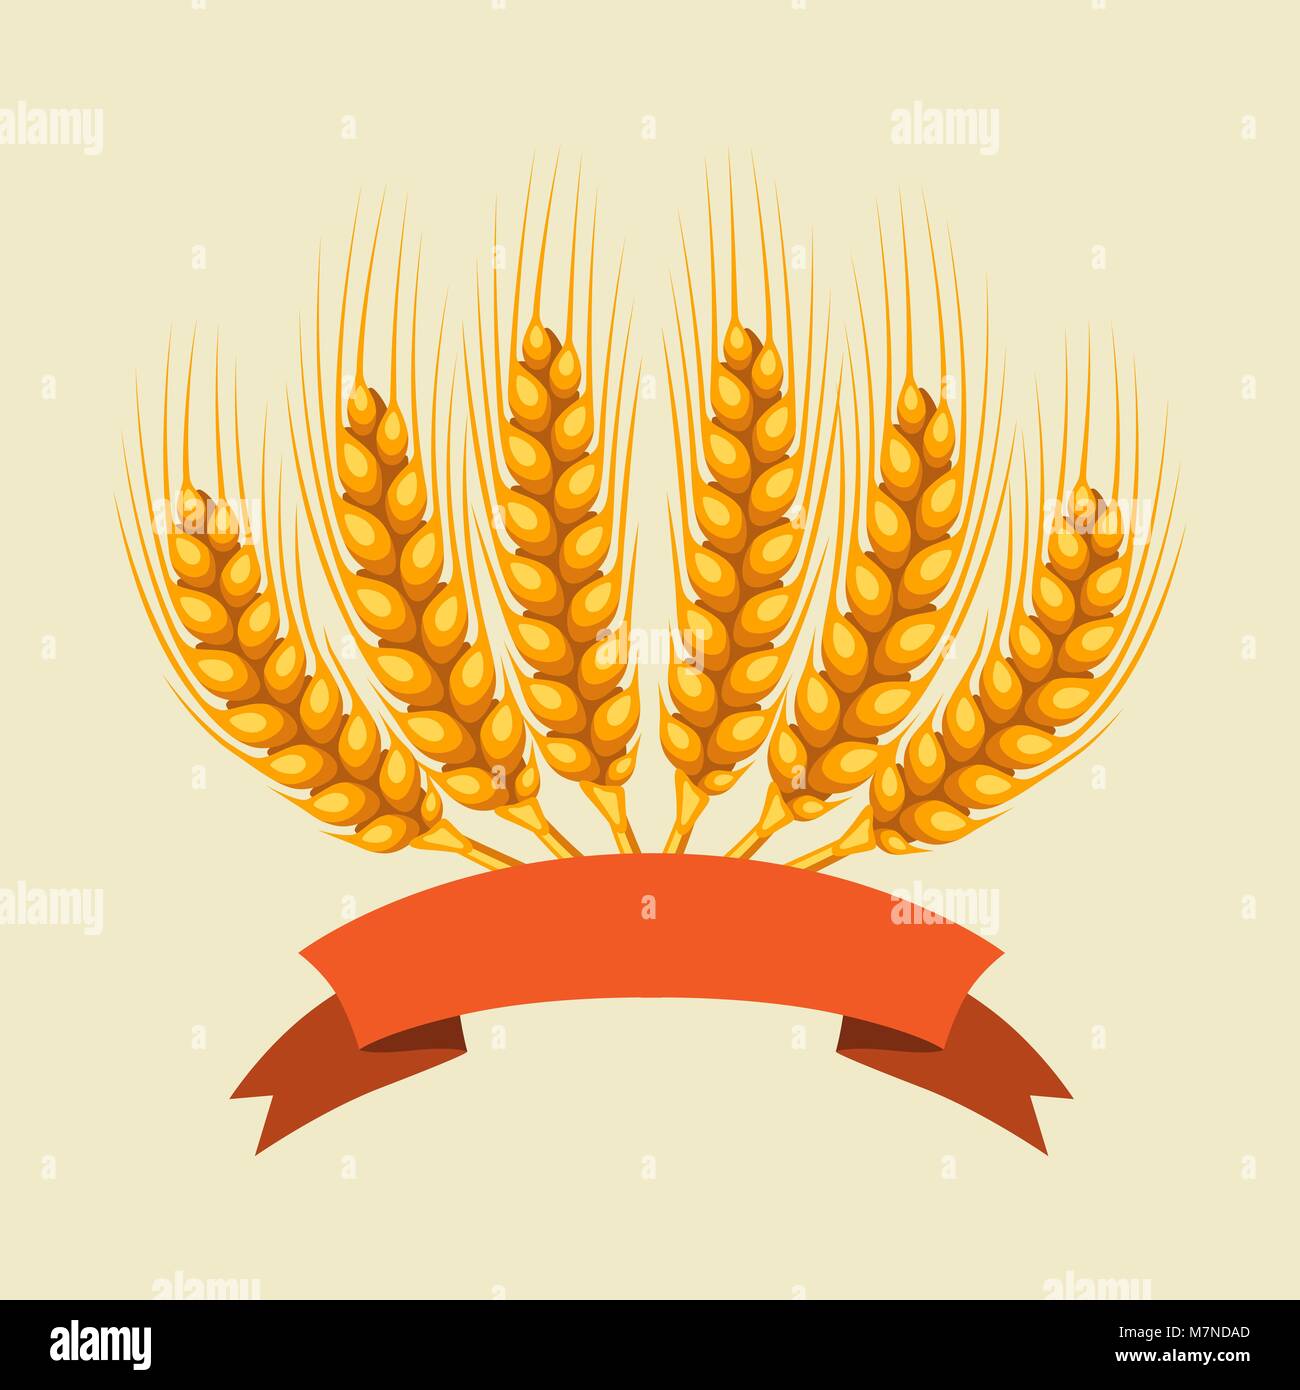 Tas de blé, d'orge ou de seigle les oreilles. Droit agricole pour la décoration d'emballage du pain, de la bière étiquettes, brochures et dépliants publicitaires Illustration de Vecteur